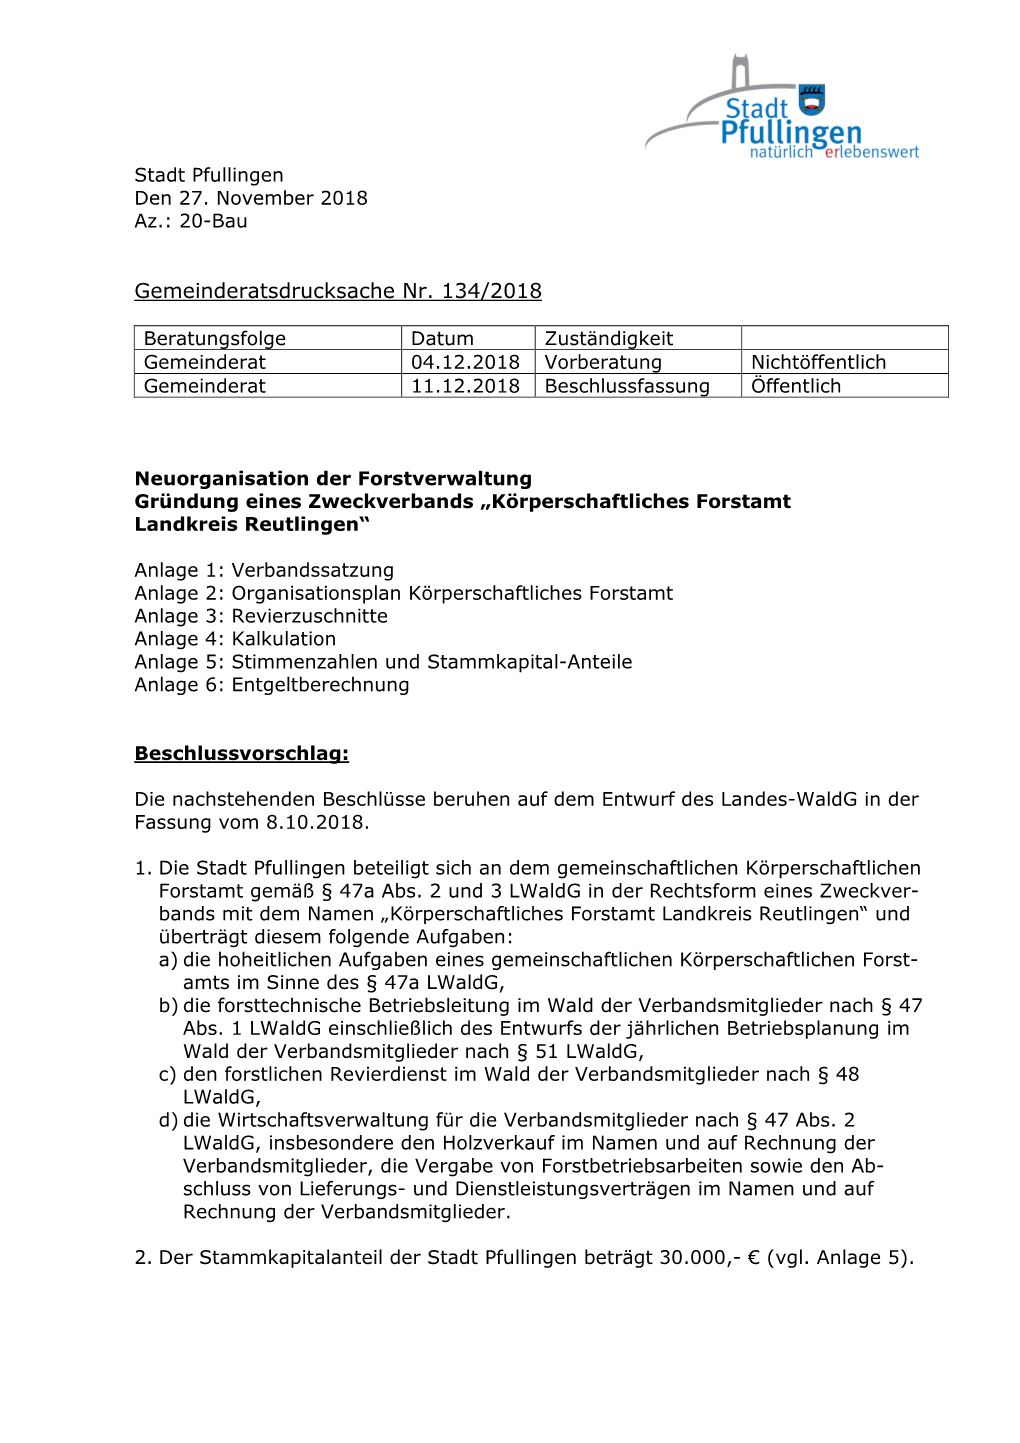 GR-DS Nr. 134-2018 Neuorganisation Forstverwaltung